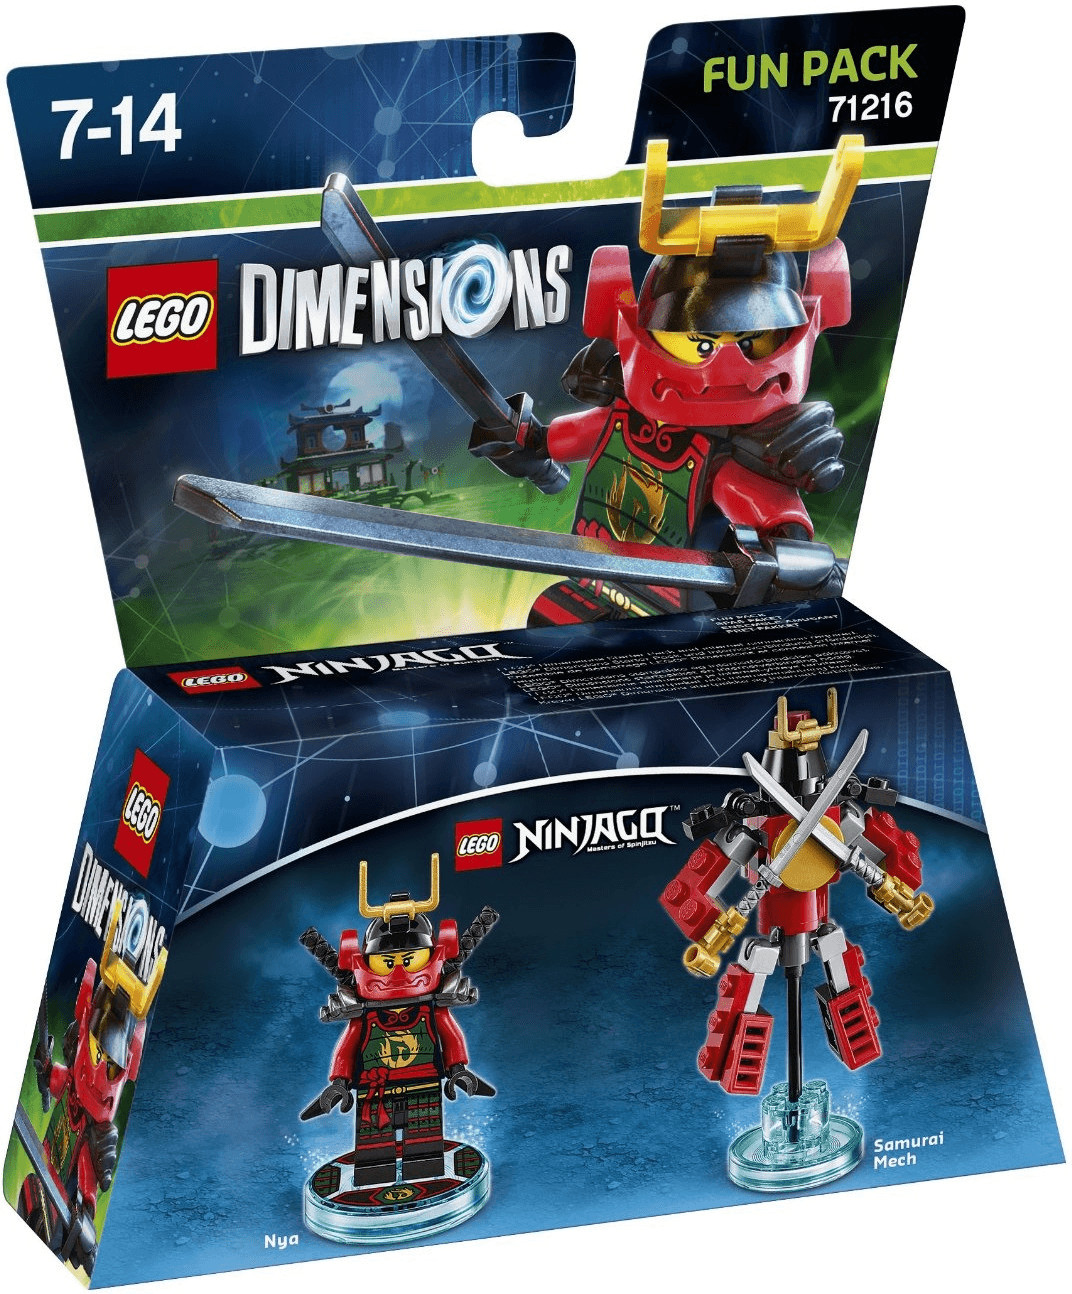 LEGO Dimensions: Fun Pack - Nya